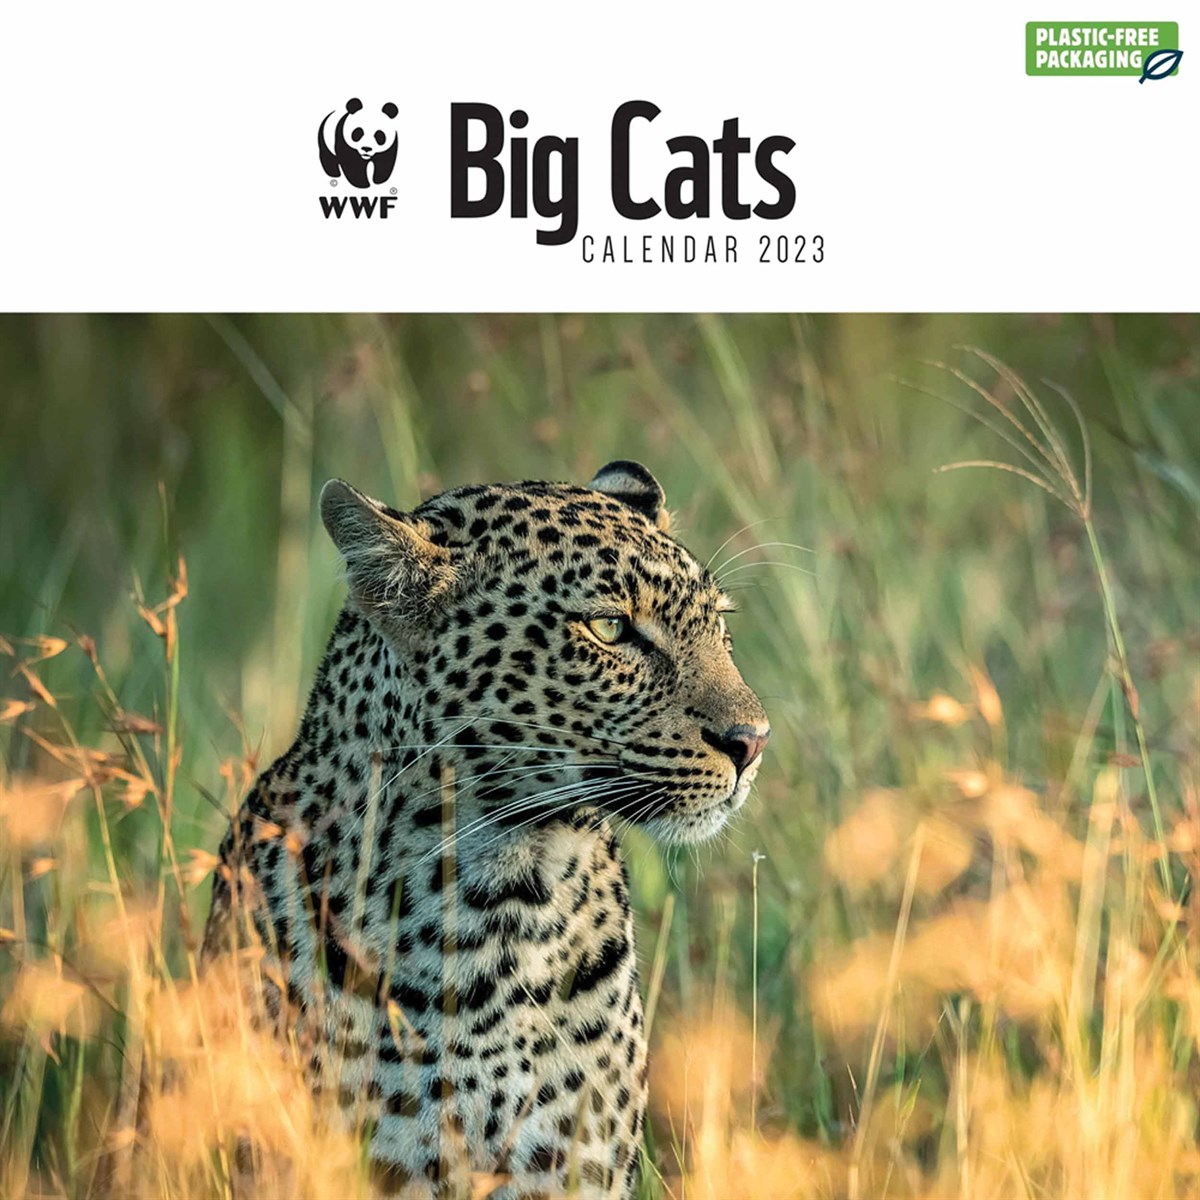 WWF, Big Cats 2023 Calendars